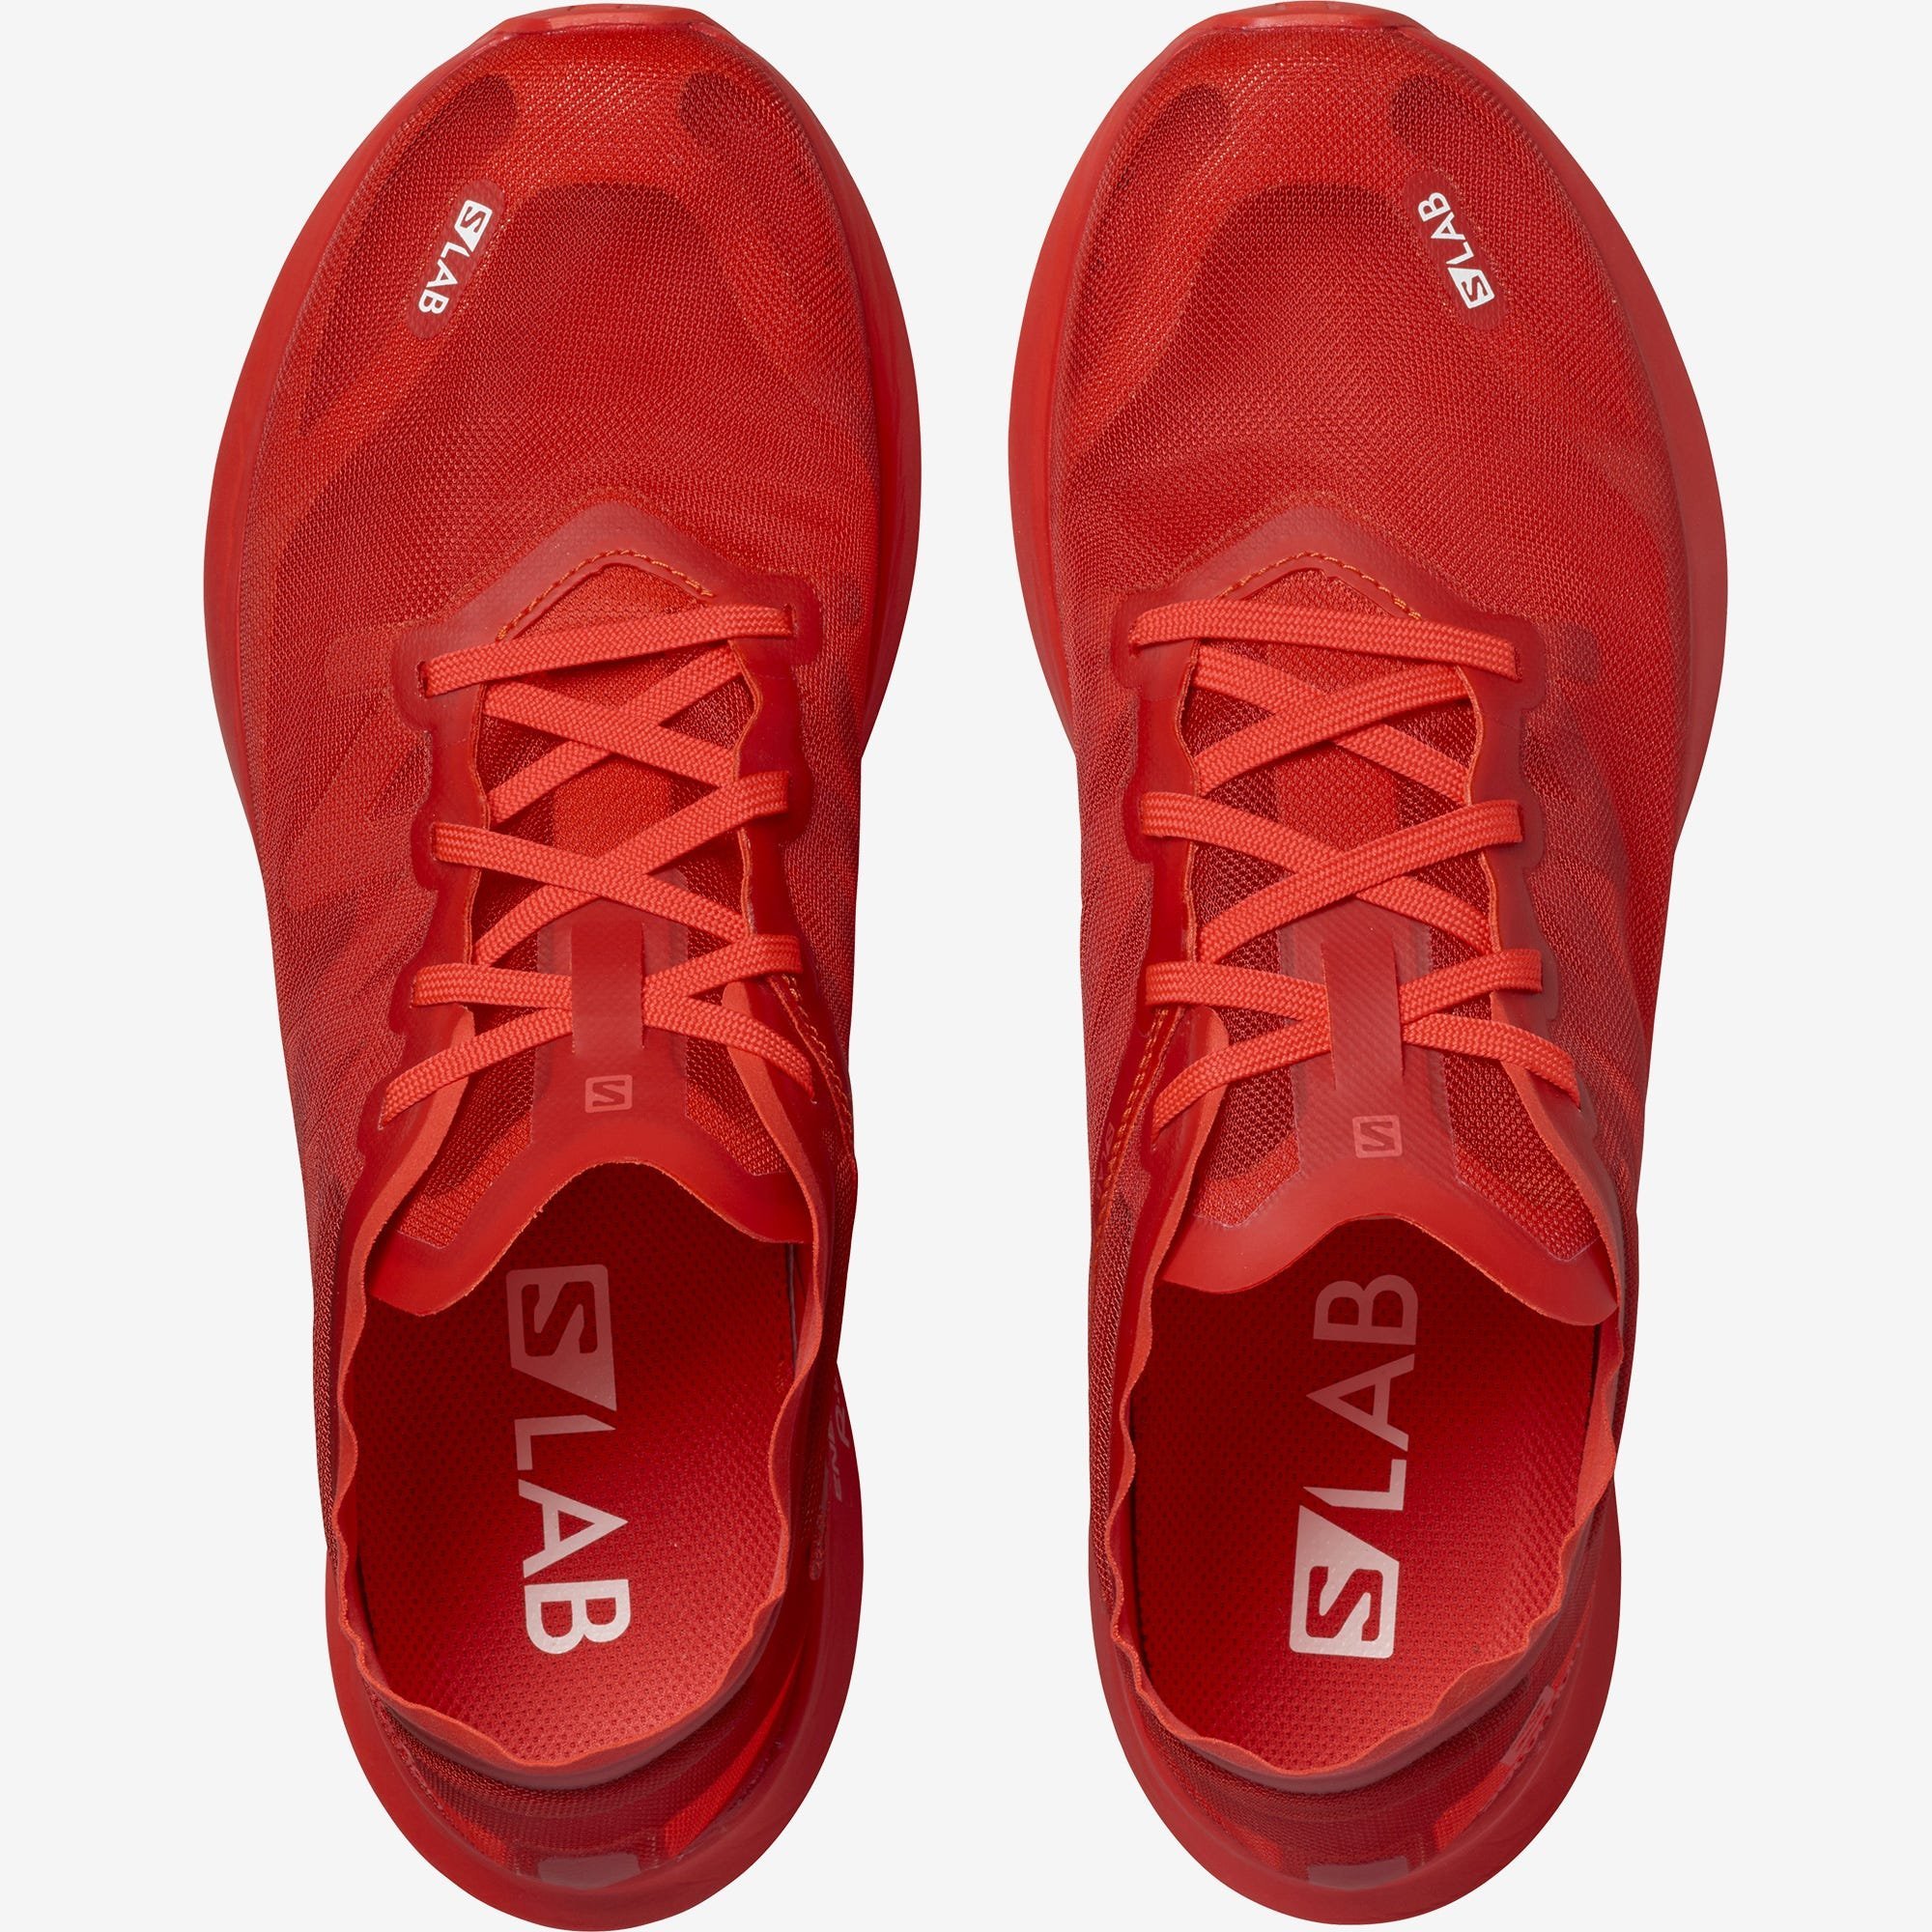 Topánky Salomon S/LAB PHANTASM - červená